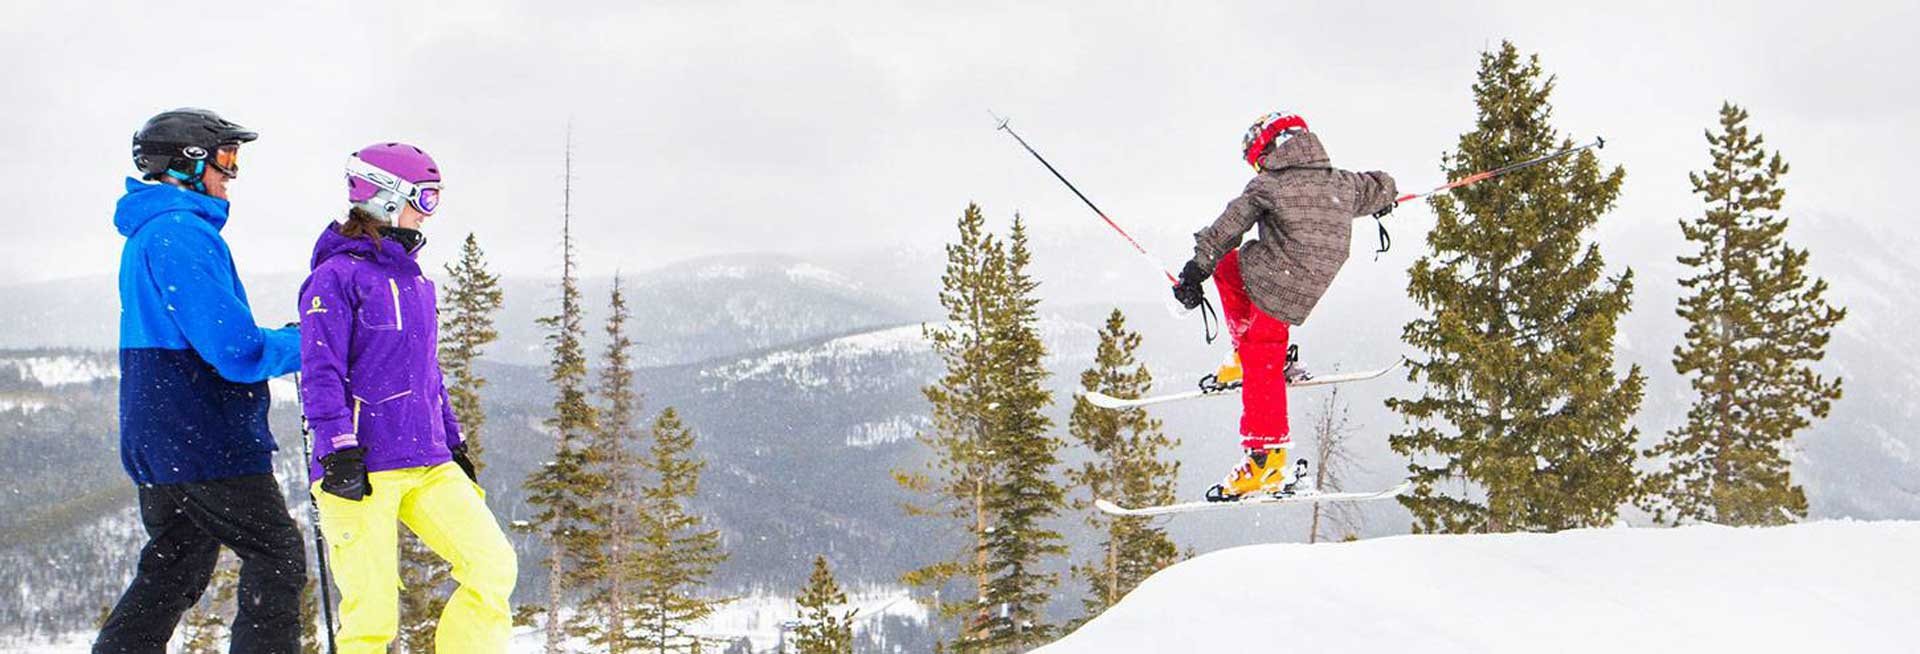 Skier jumping.